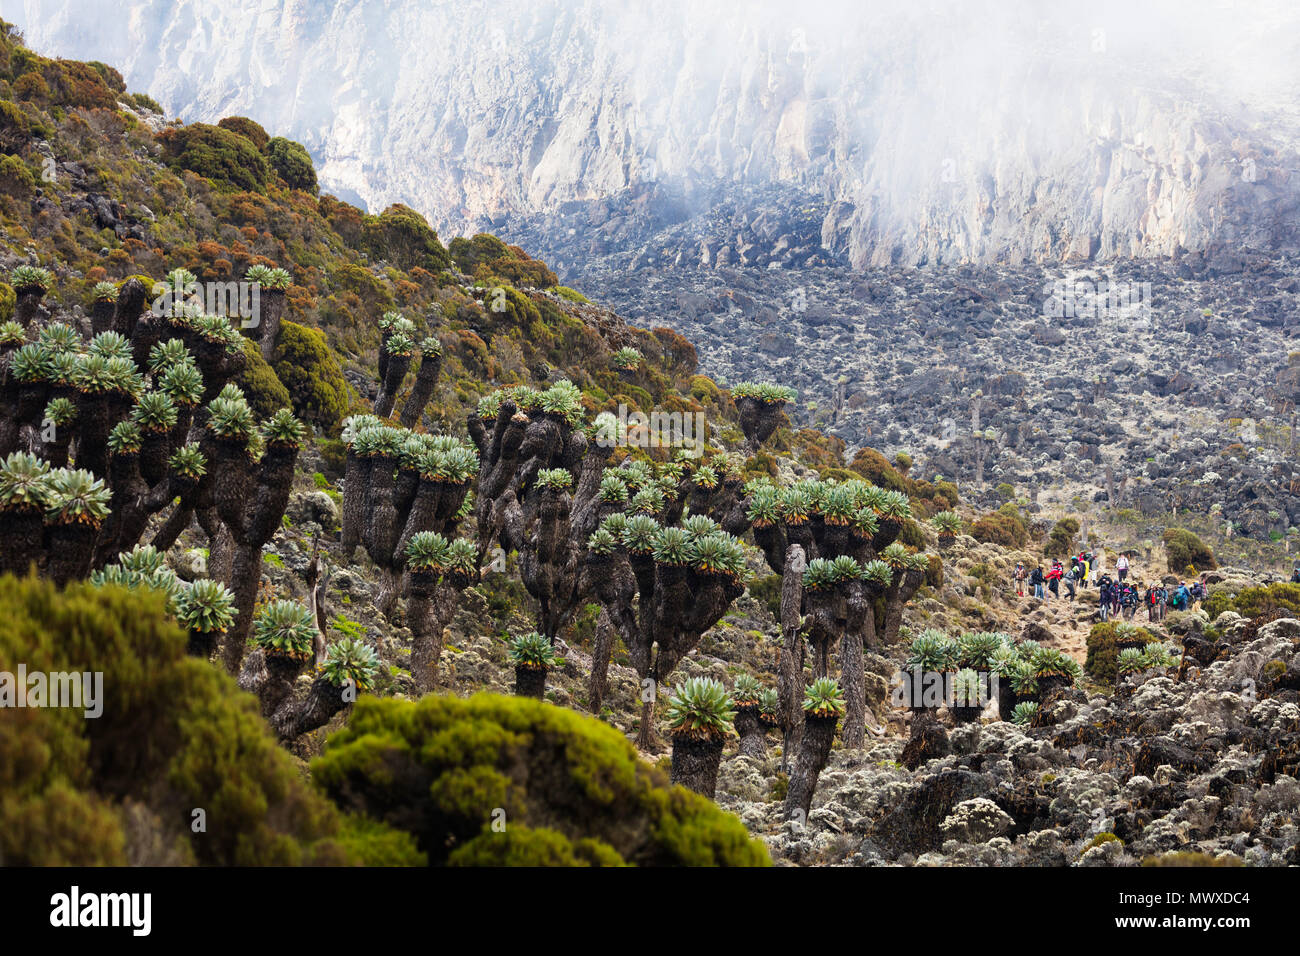 Lobelia morogoroensis les plantes et les randonneurs sur un sentier, Parc national du Kilimandjaro, Site du patrimoine mondial de l'UNESCO, la Tanzanie, l'Afrique de l'Est, l'Afrique Banque D'Images